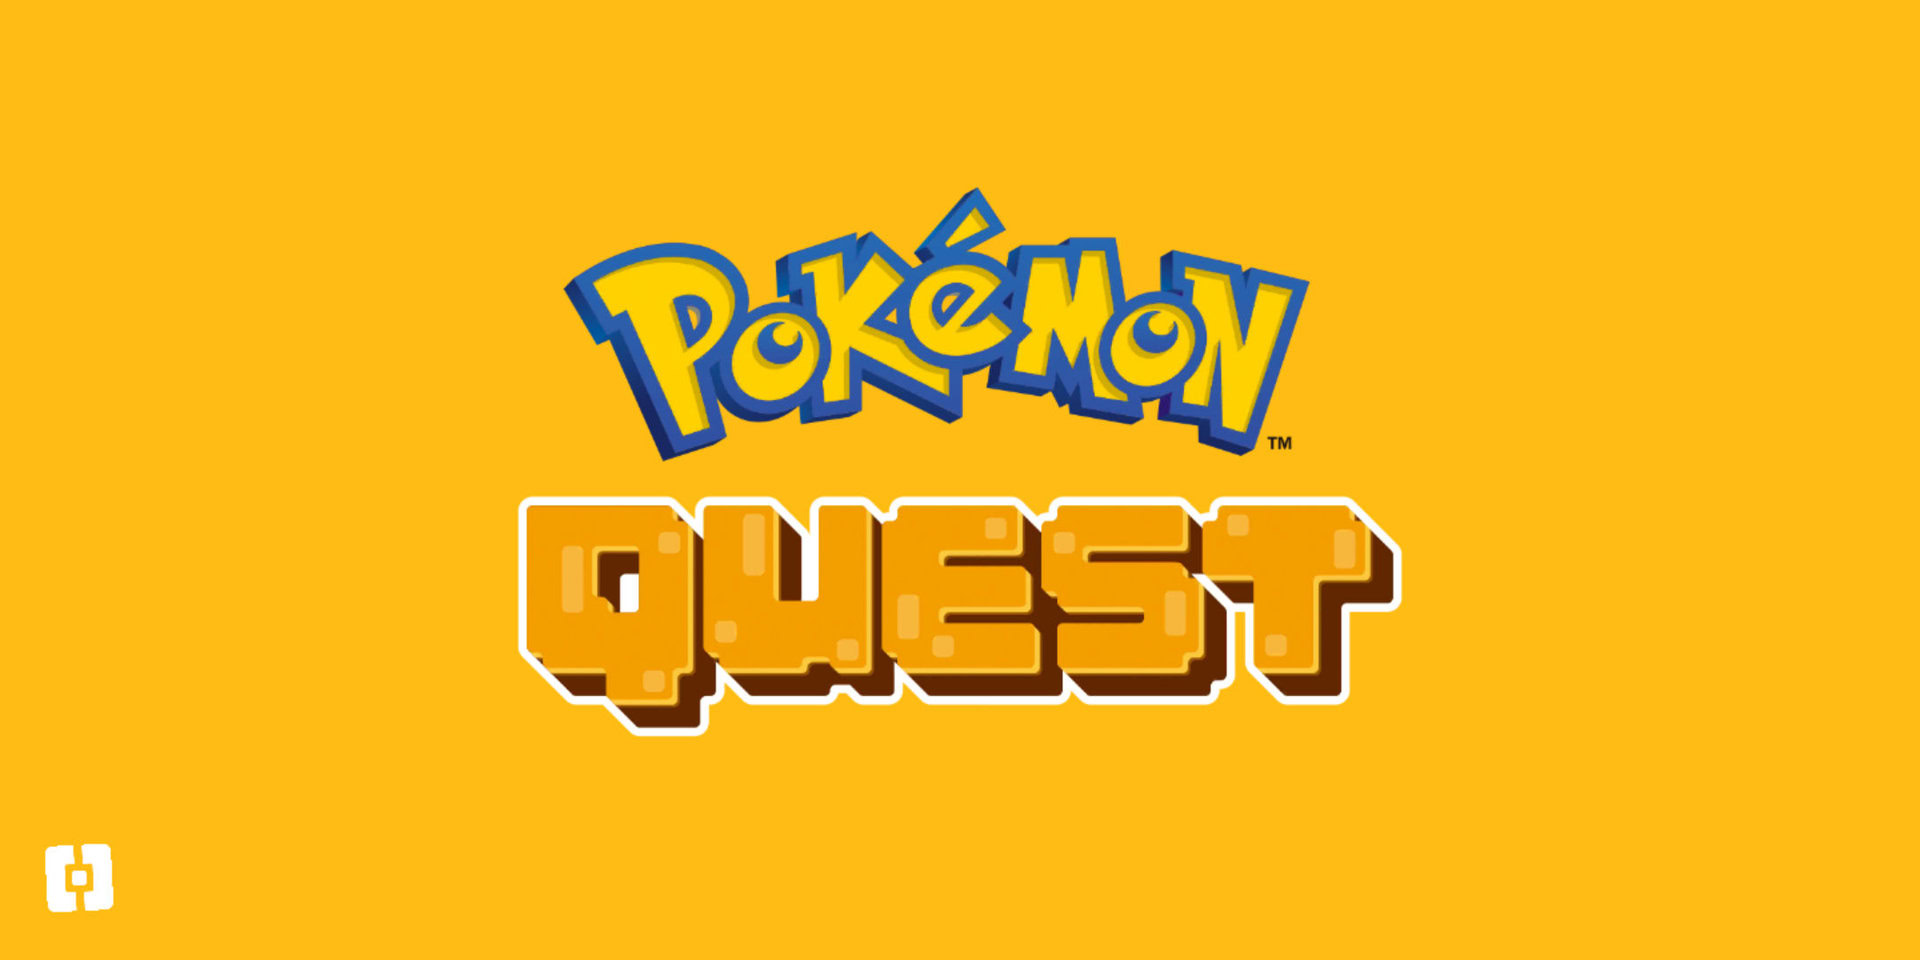 Pokemon Quest Mobile: A complete guide